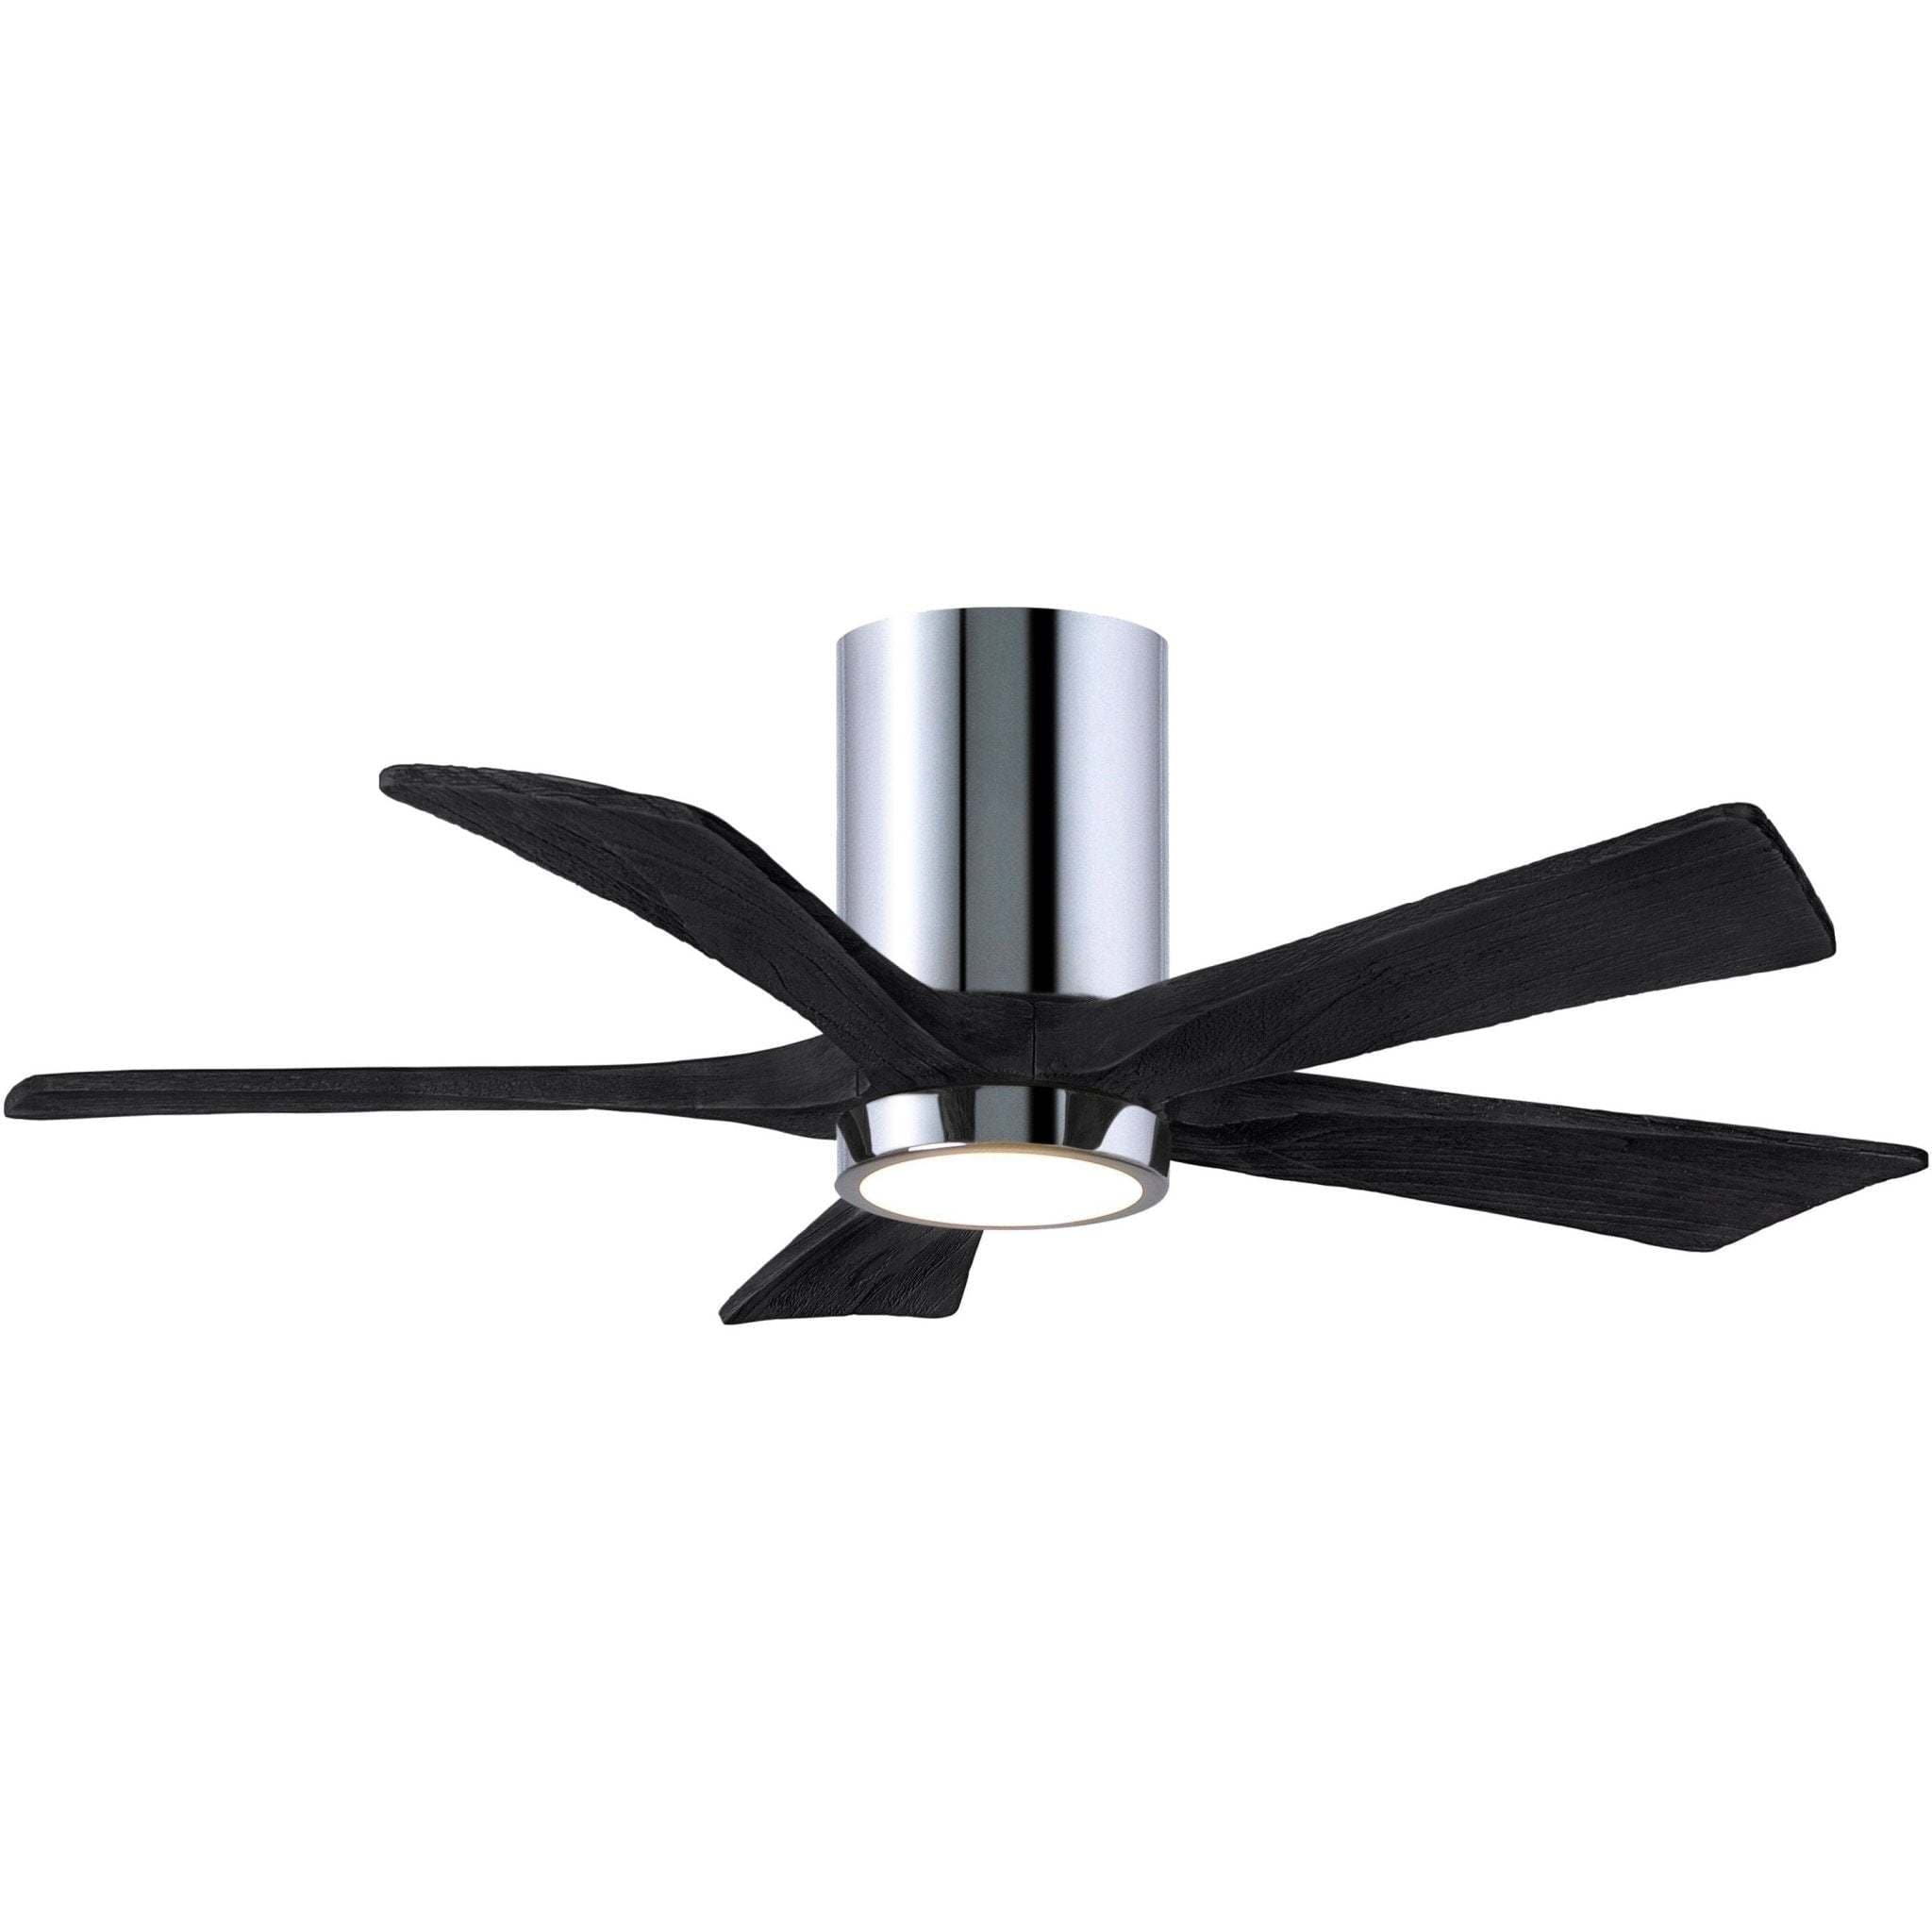 Irene 5 Blade Hugger Ceiling fan with Light Kit - Image 1